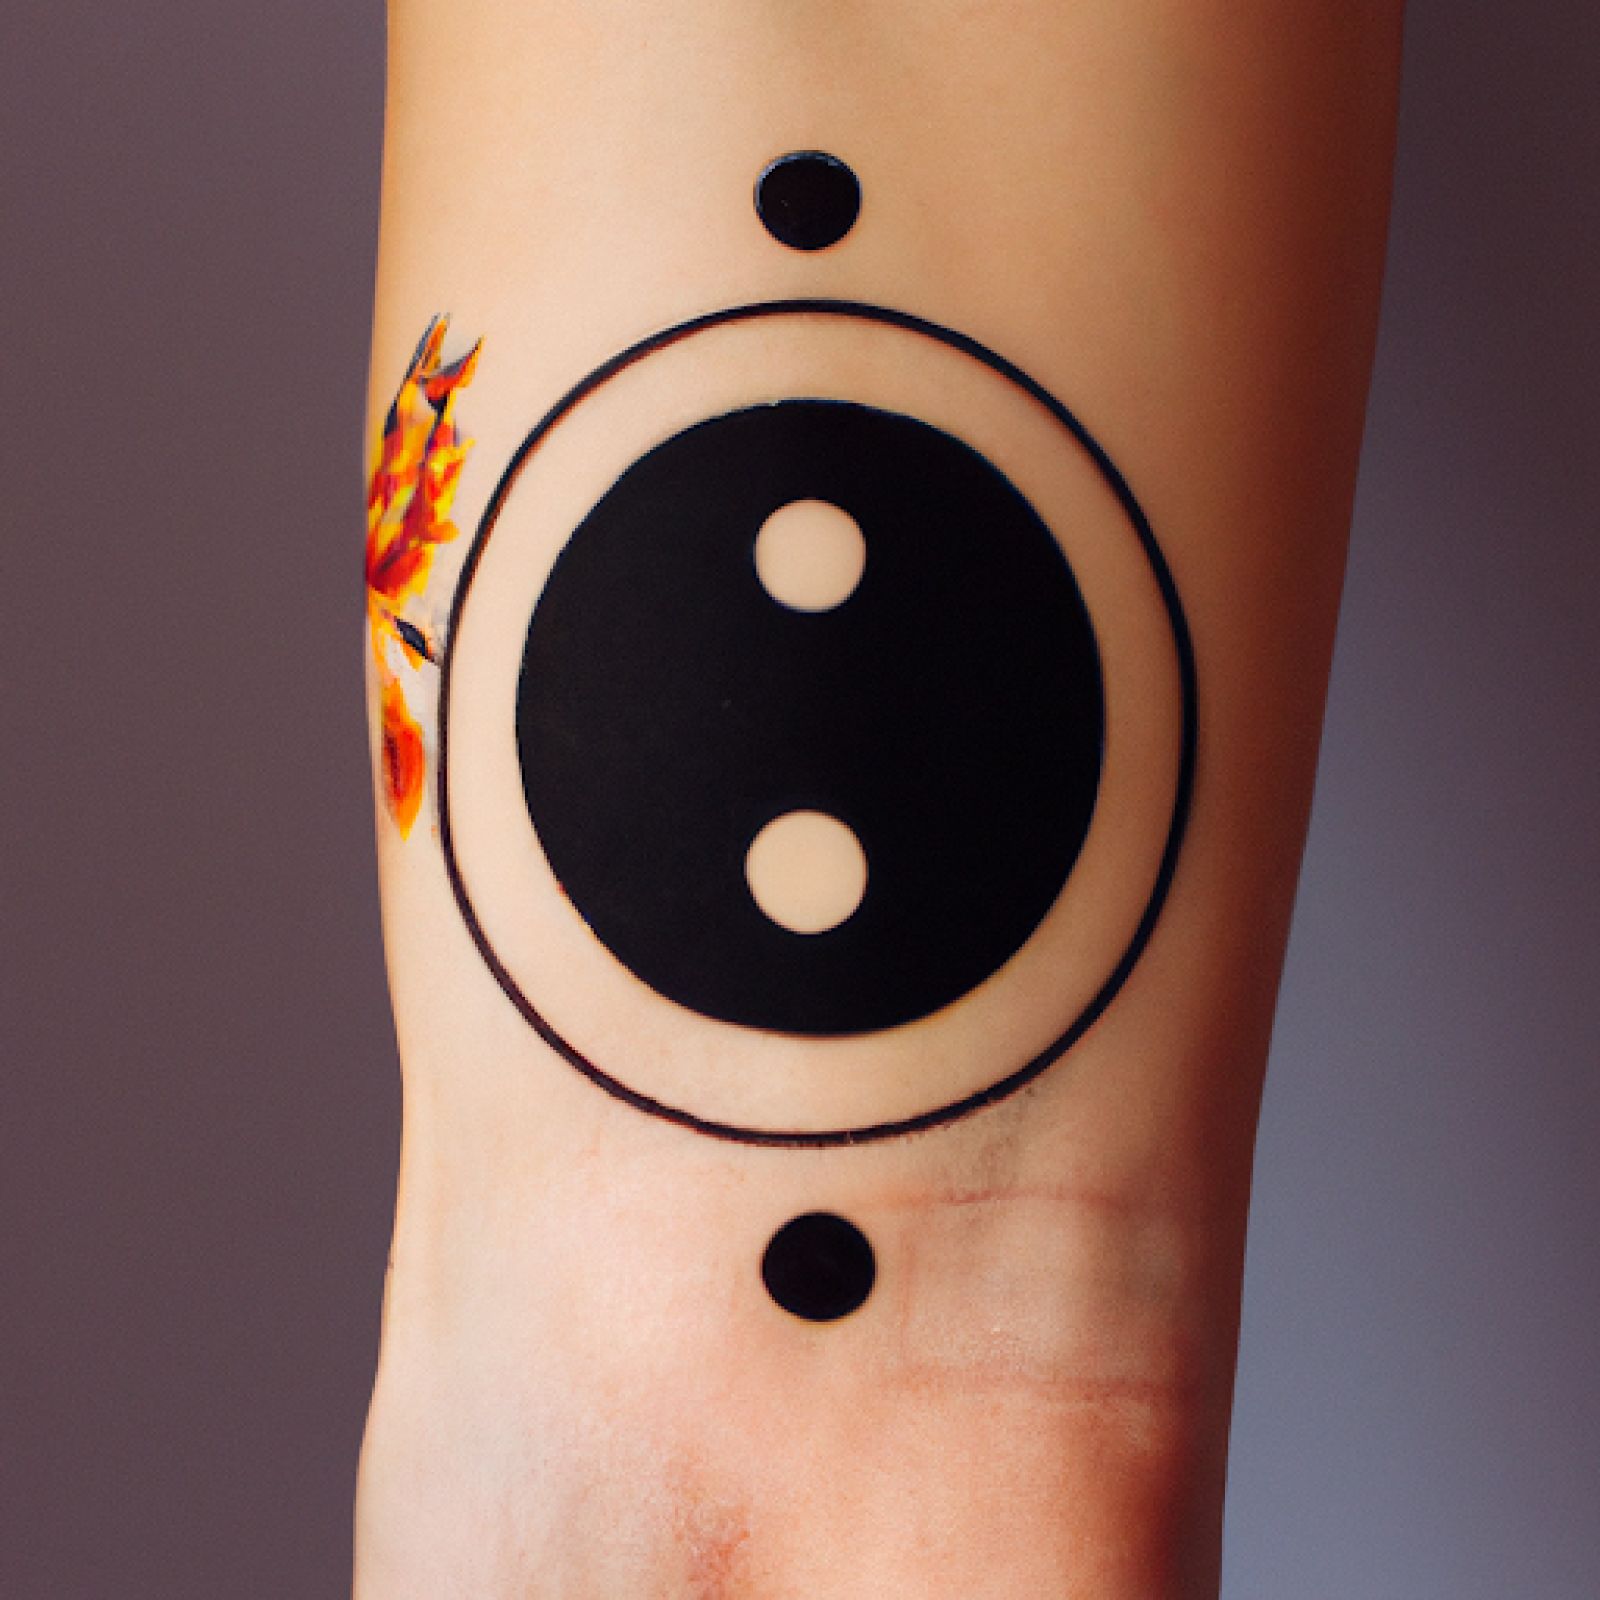 Yin yang tattoo on arm for women